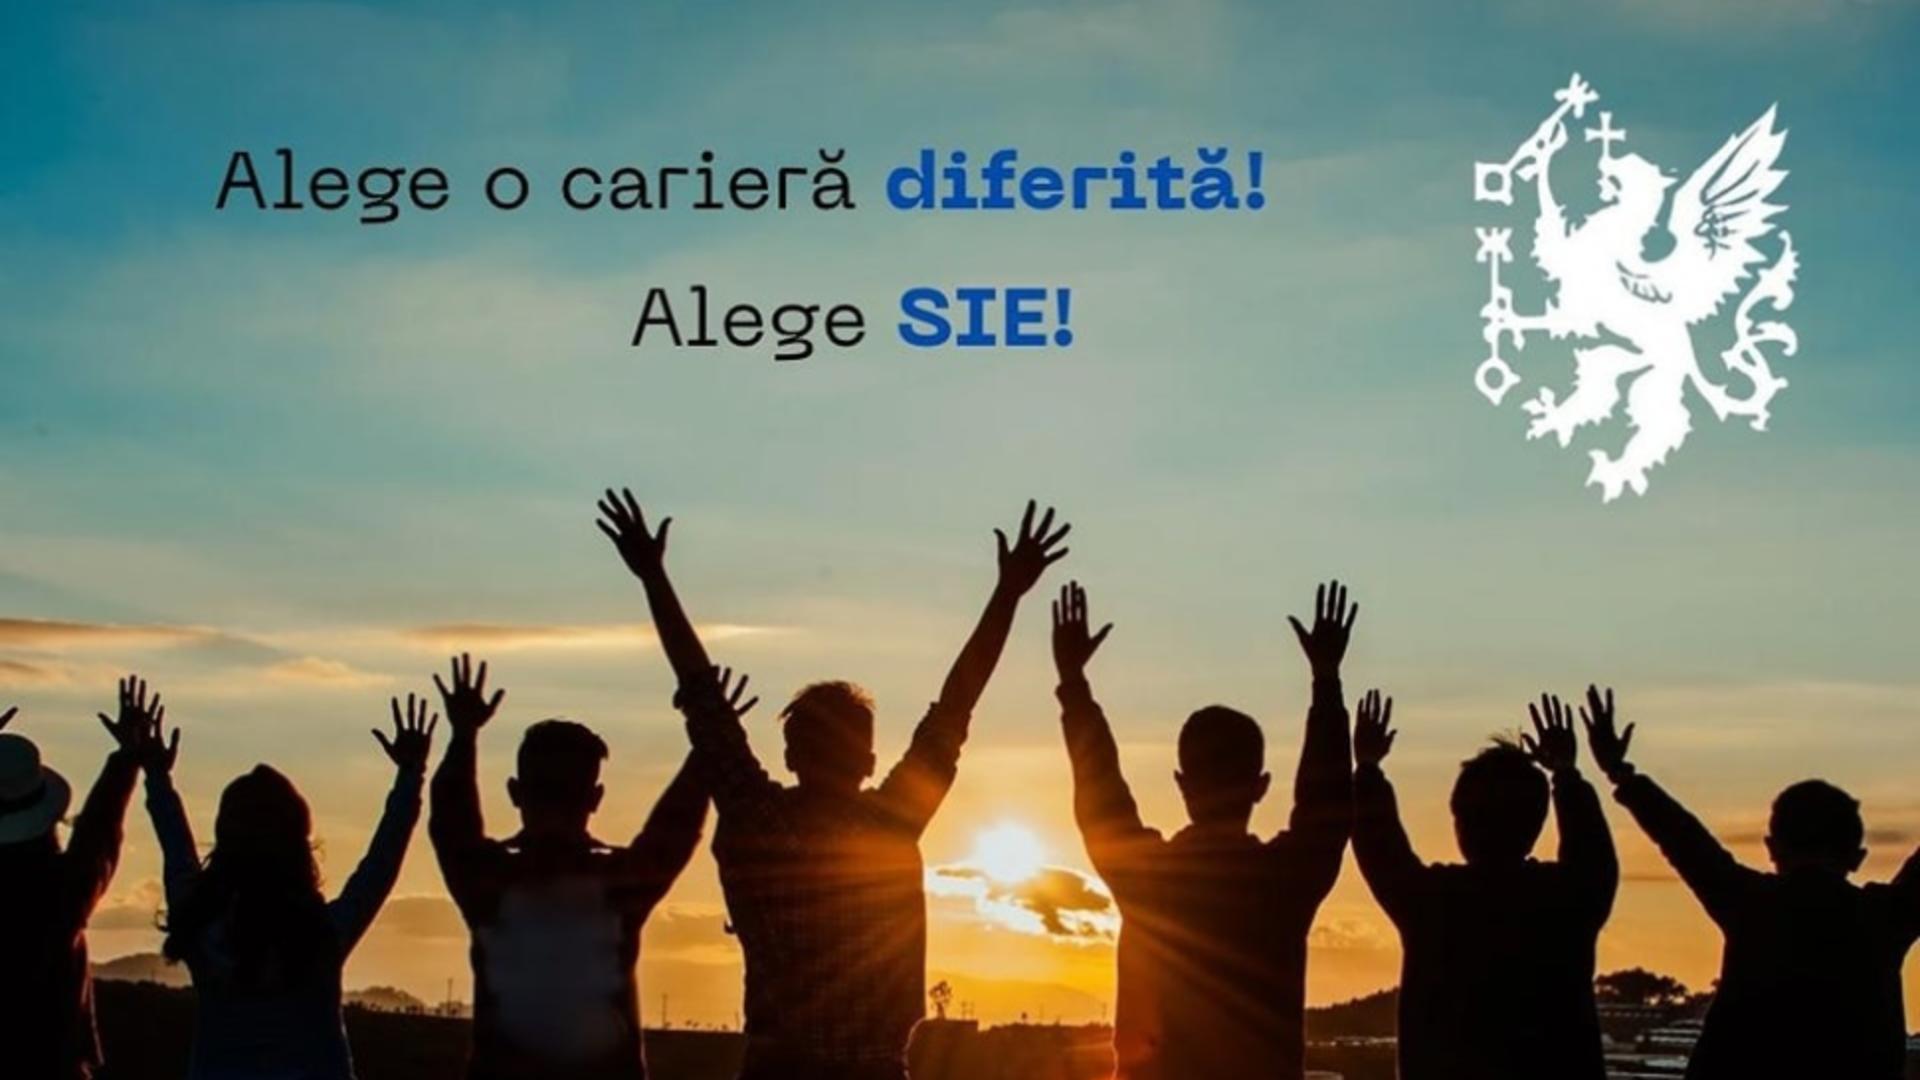 Anunț de promovare SIE. Foto: Facebook